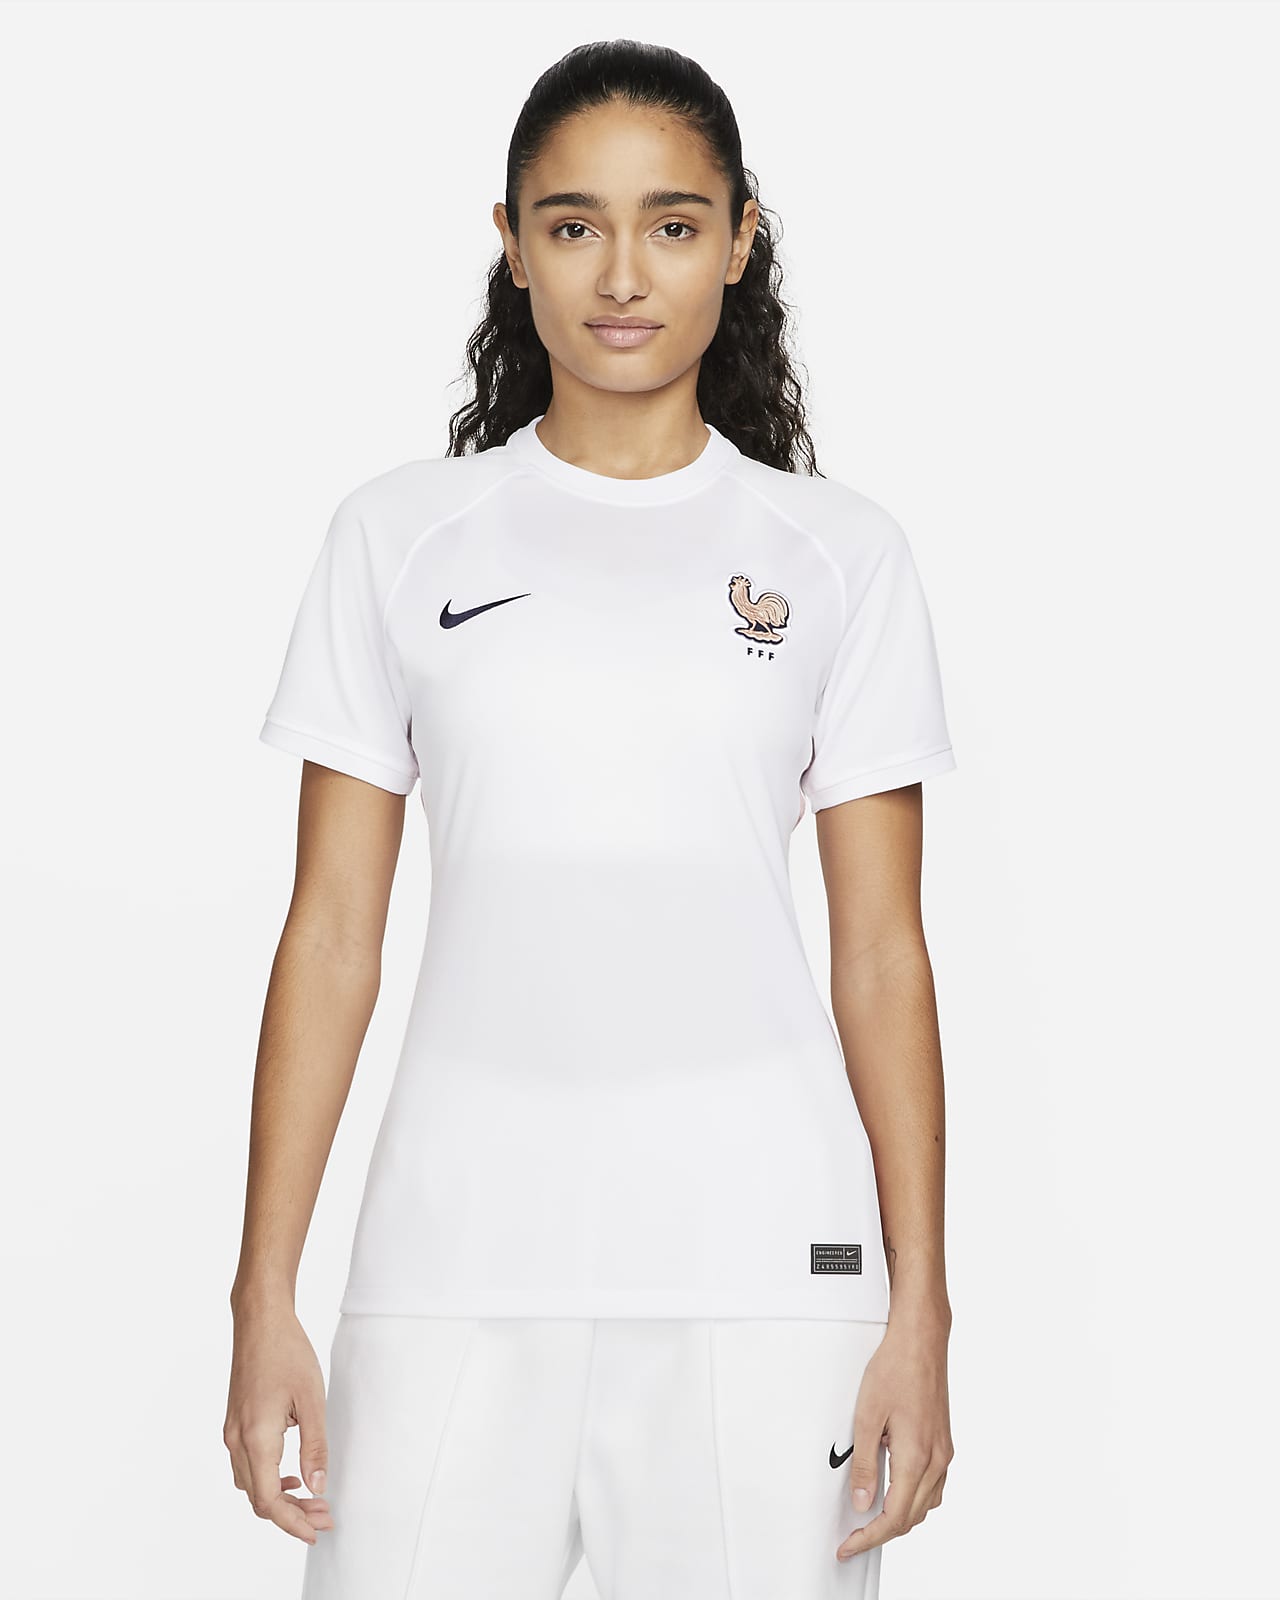 FFF 2022 Stadium Away Women's Nike Dri-FIT Football Shirt